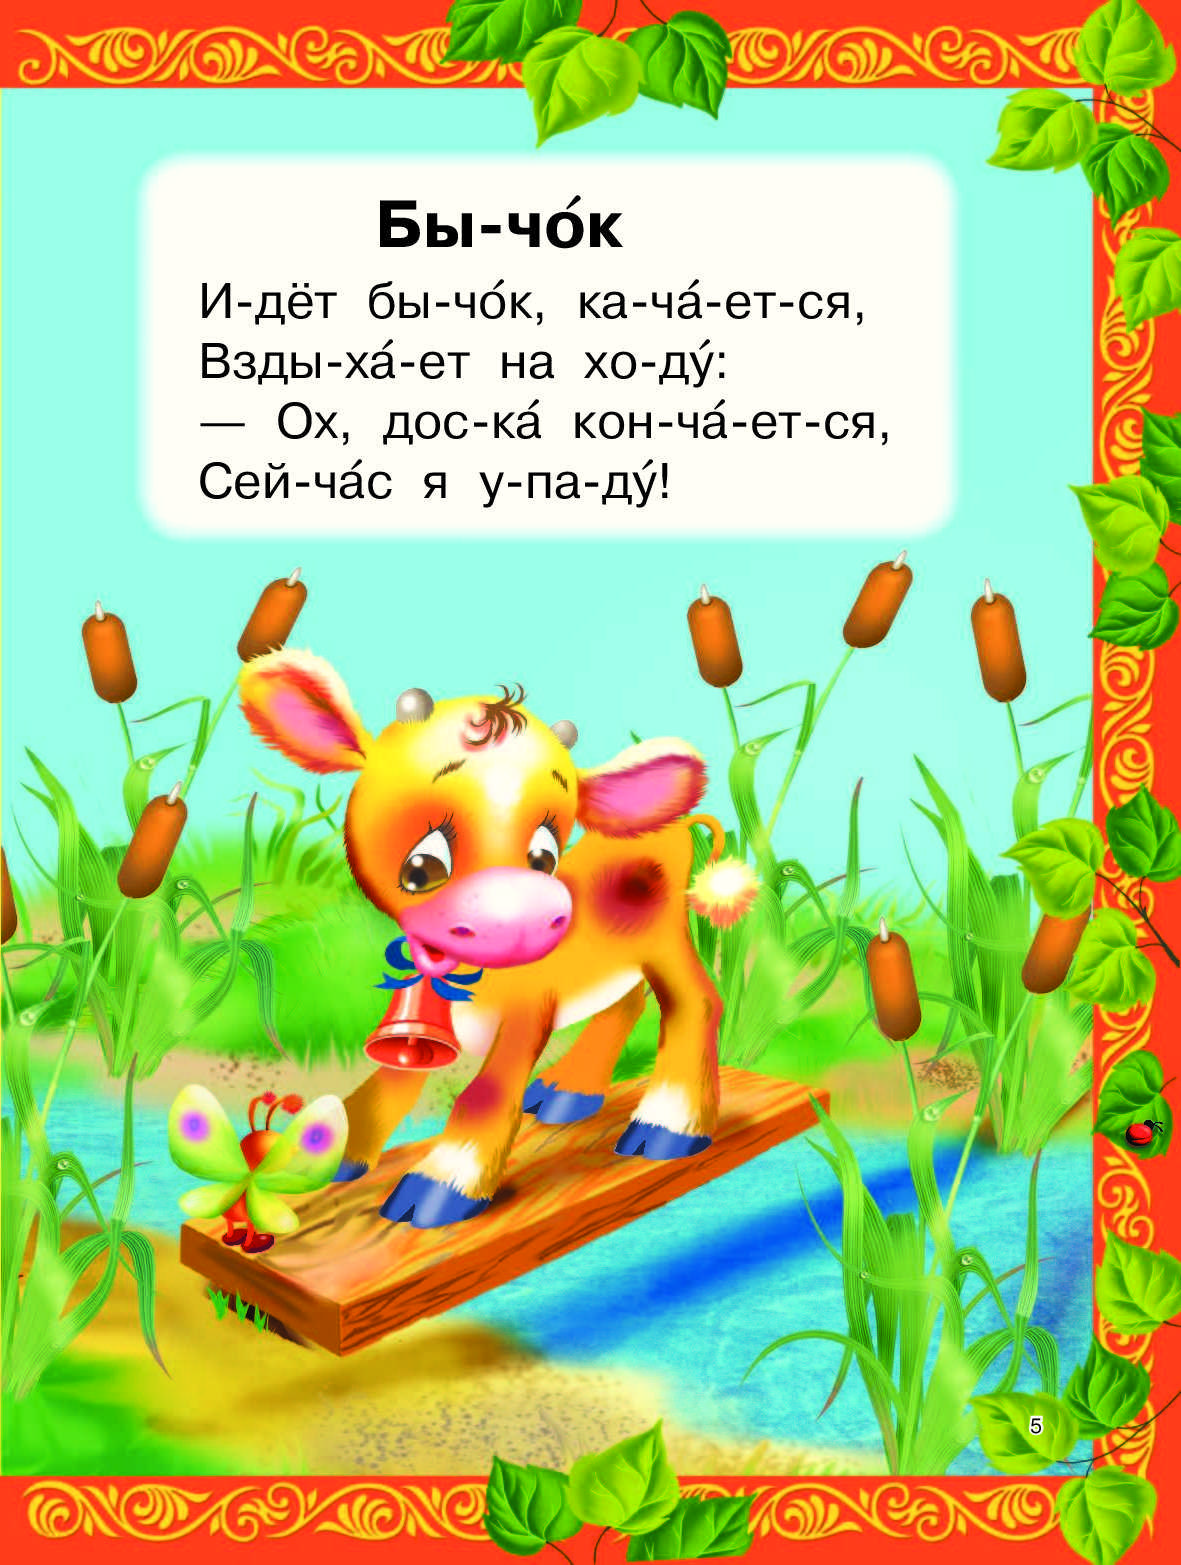 Кирилл авдеенко - автор детских стихов